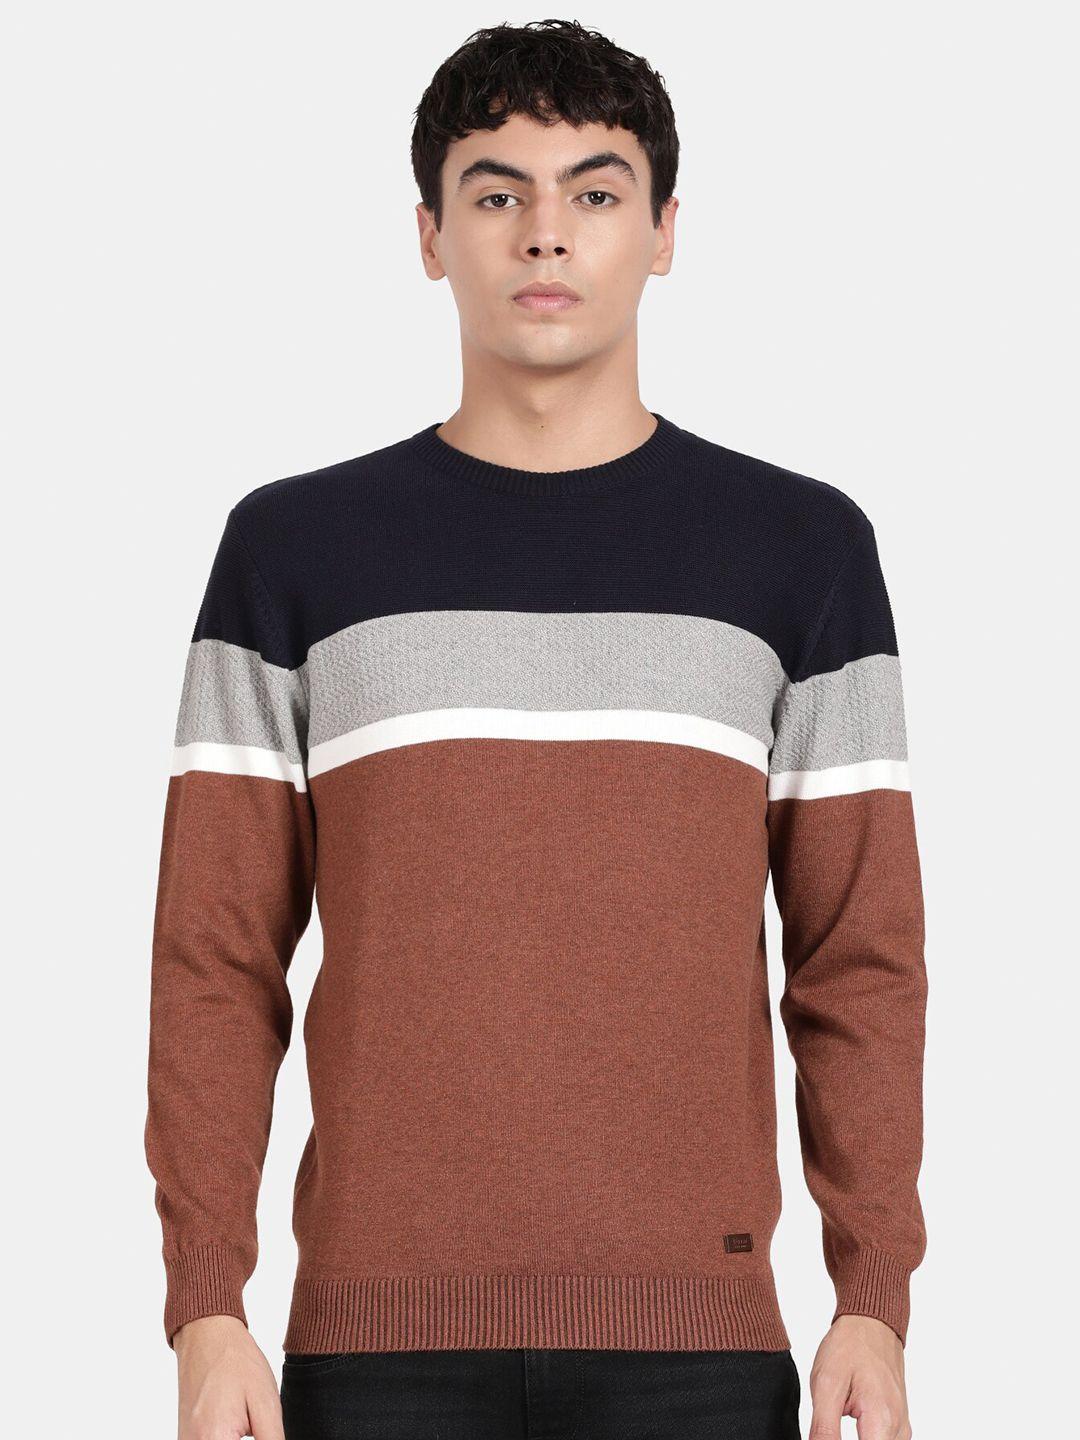 t-base colourblocked pullover cotton sweatshirt